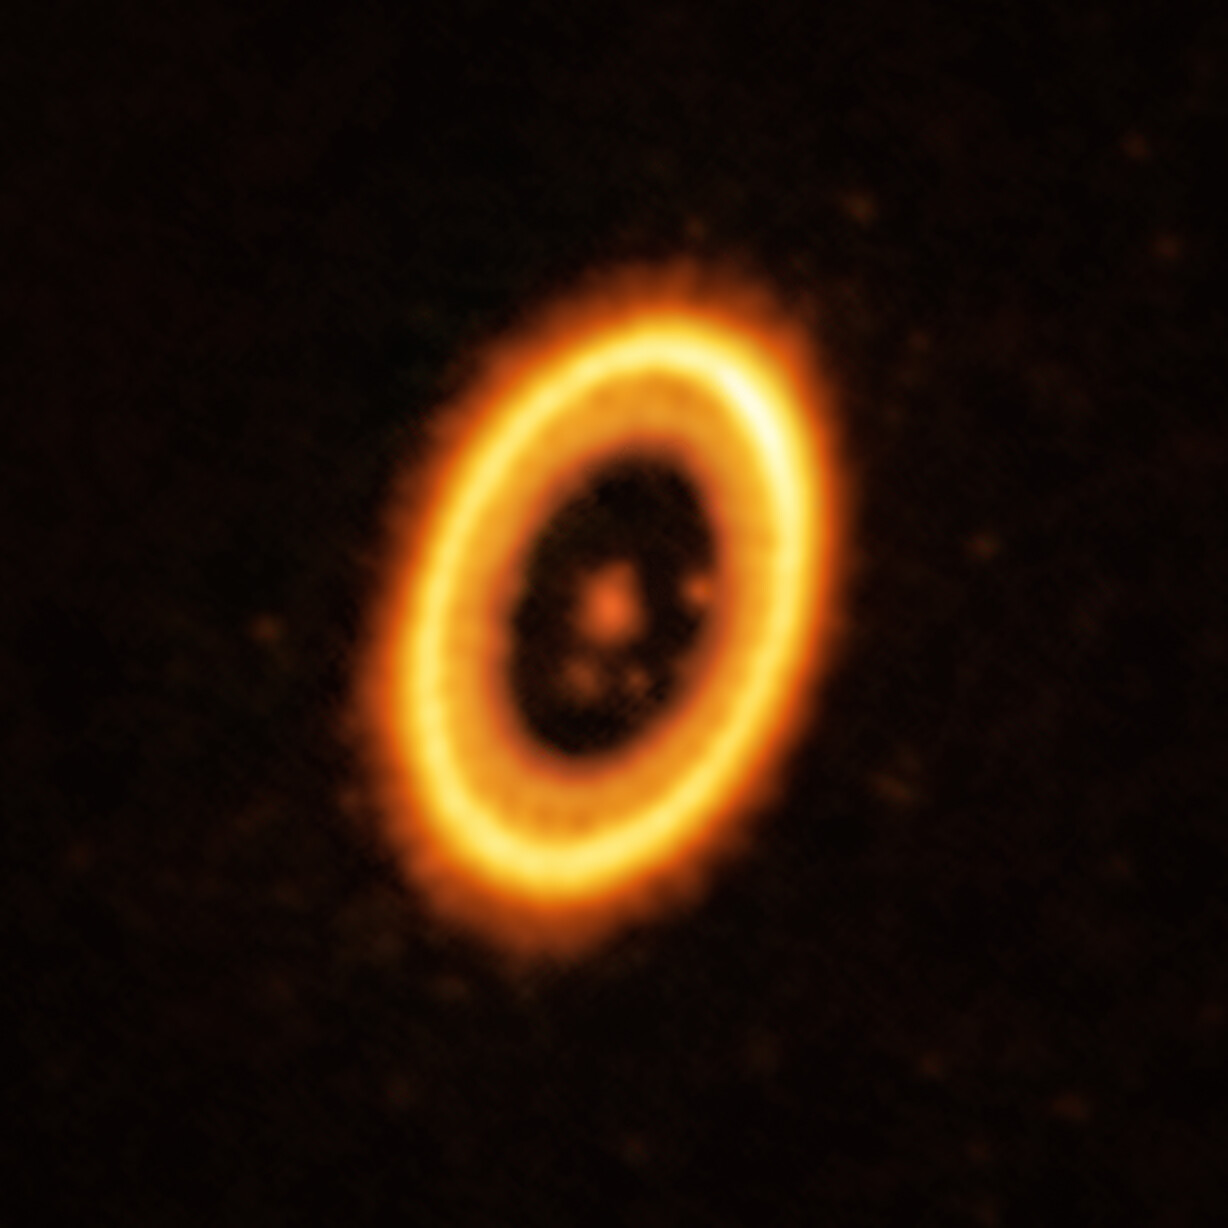 Esta imagen, tomada con el Atacama Large Millimeter/submillimeter Array (ALMA), del cual ESO es socio, muestra el joven sistema planetario PDS 70, ubicado a casi 400 años luz de la Tierra. El sistema presenta una estrella en su centro, alrededor de la cual orbita el planeta PDS 70 b. En la misma órbita que PDS 70b, los astrónomos han detectado una nube de escombros que podrían ser los componentes básicos de un nuevo planeta o los restos de uno ya formado. La estructura en forma de anillo que domina la imagen es un disco circunestelar de material, a partir del cual se están formando planetas. De hecho, hay otro planeta en este sistema: el PDS 70c, que se ubica a las 3 en punto justo al lado del borde interior del disco. Crédito: ALMA (ESO/NAOJ/NRAO) / Balsalobre-Ruza et al.